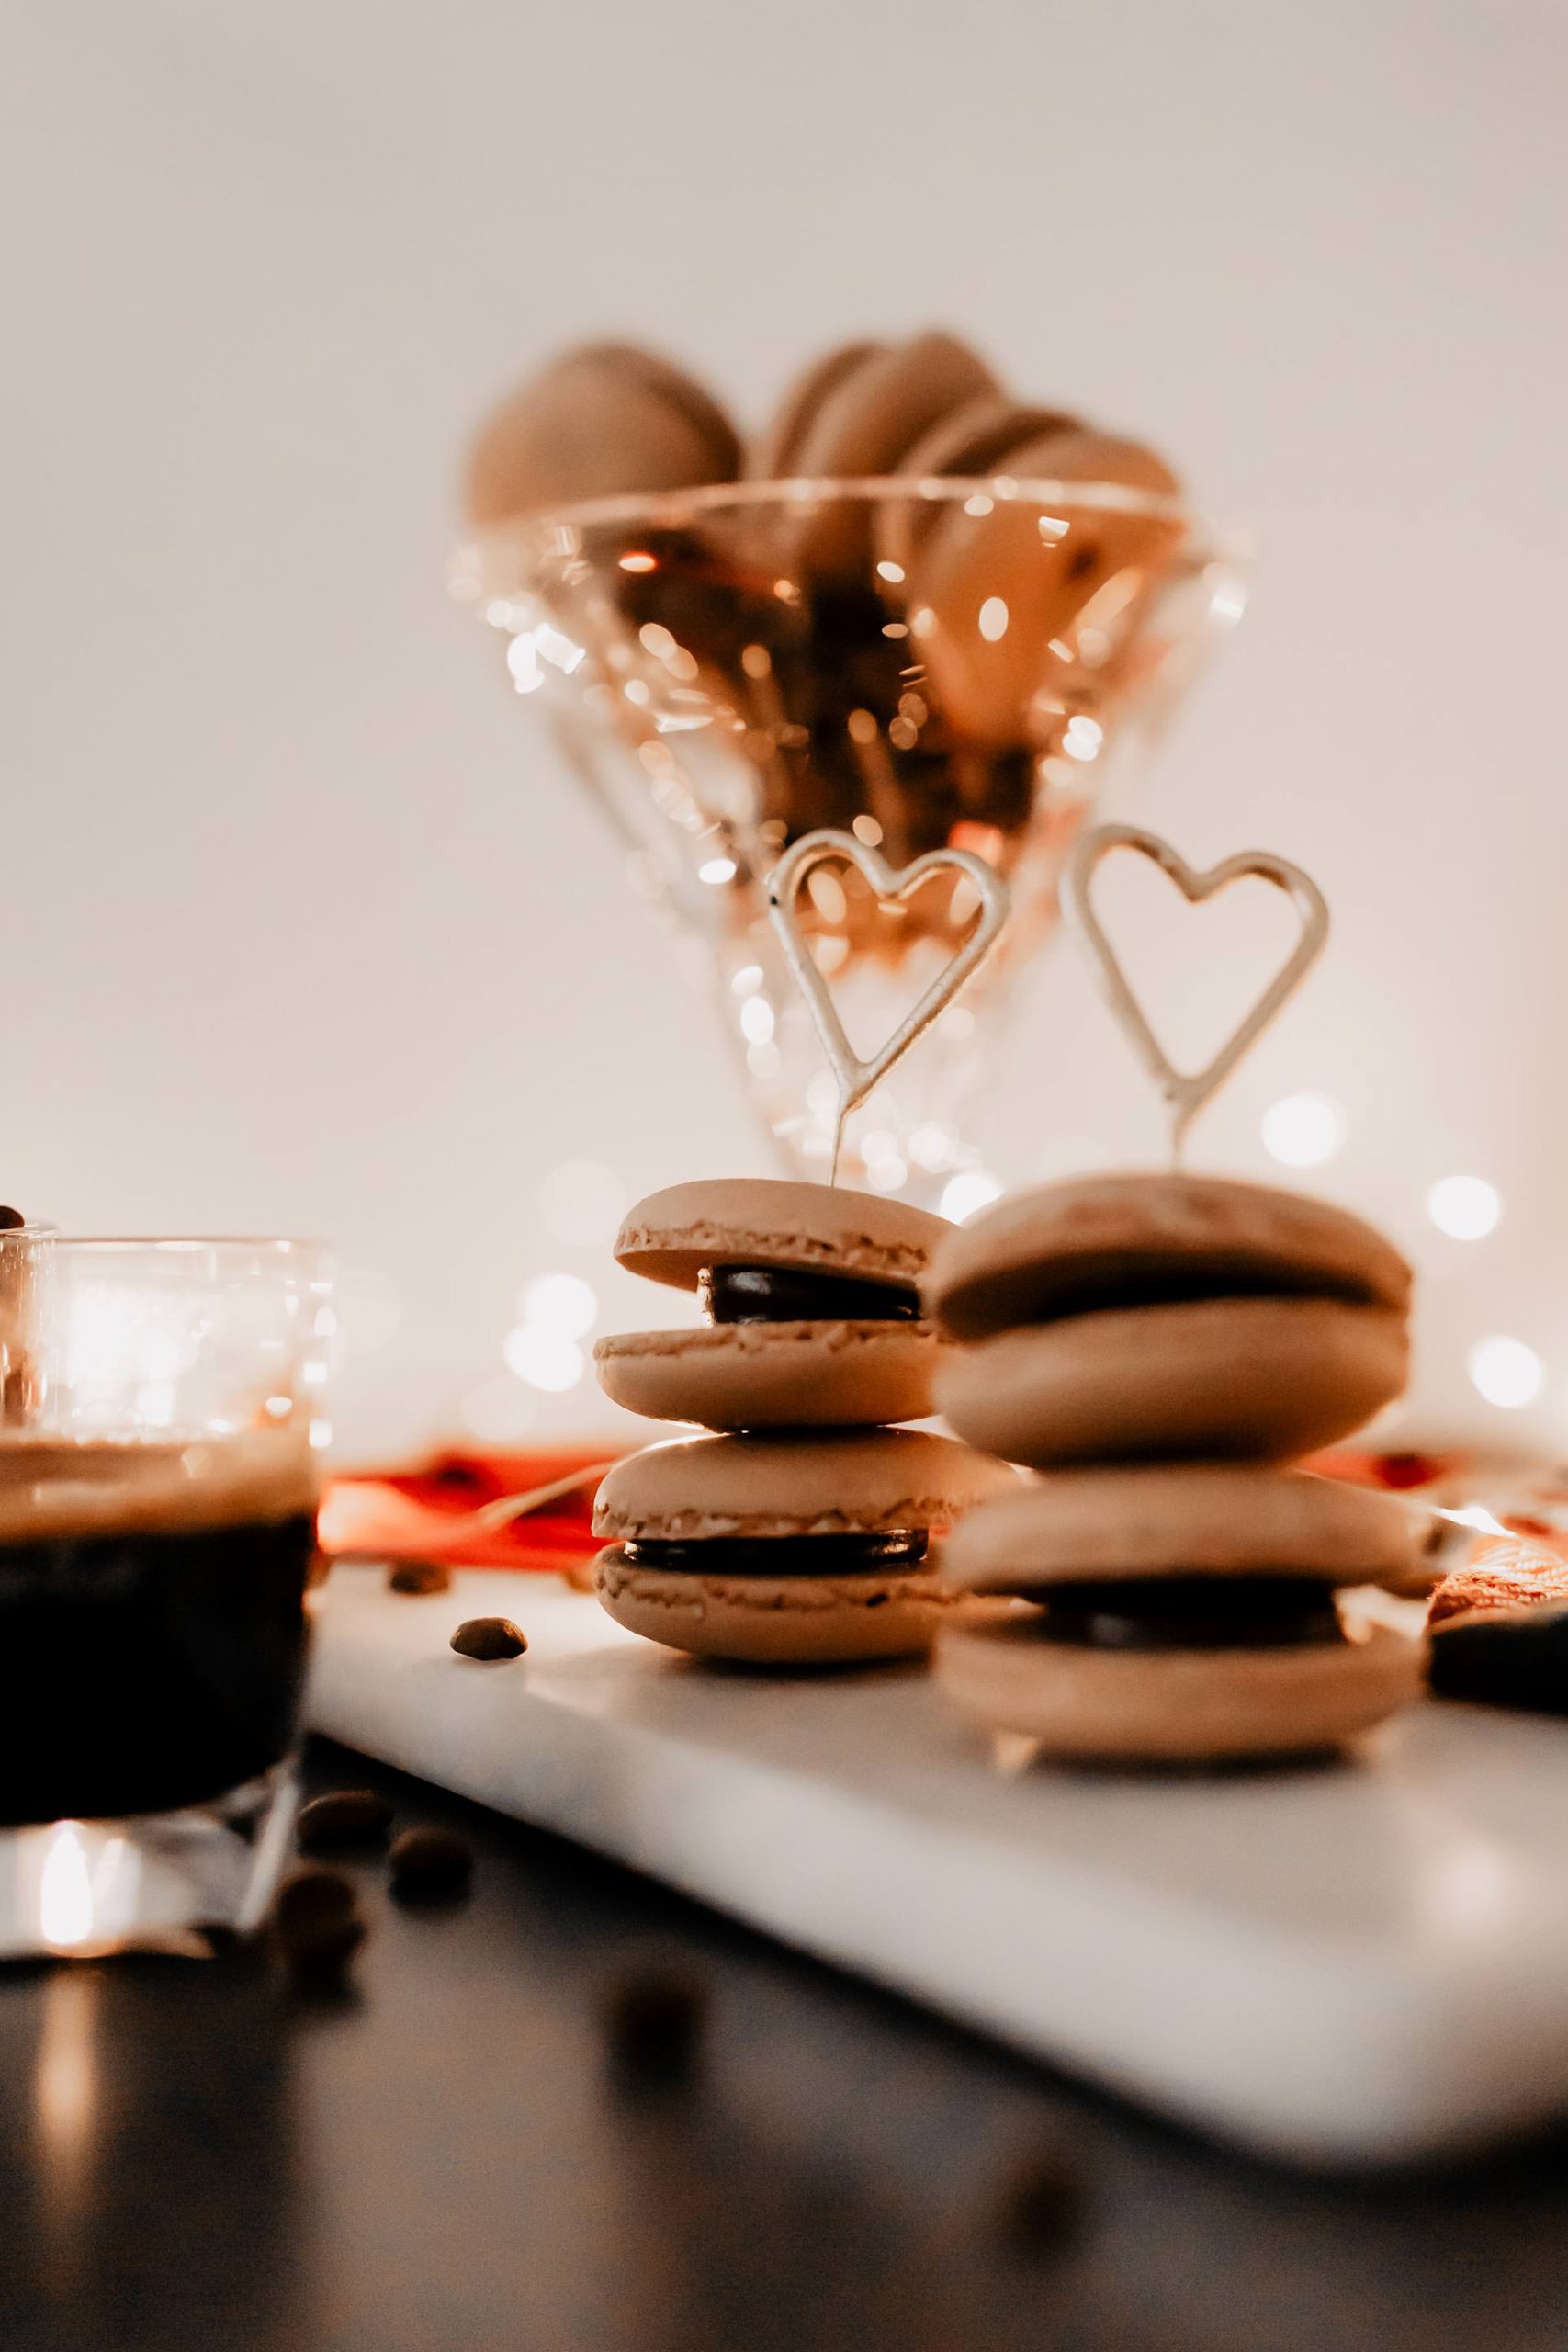 Anzeige/Gewinnspiel. Ein Rezept für Coffee-Junkies findest du jetzt am Foodblog! So einfach kannst du Kaffee-Macarons selber machen! Außerdem wartet ein tolles Gewinnspiel auf dich. www.whoismocca.com #macarons #rezept #weihnachten